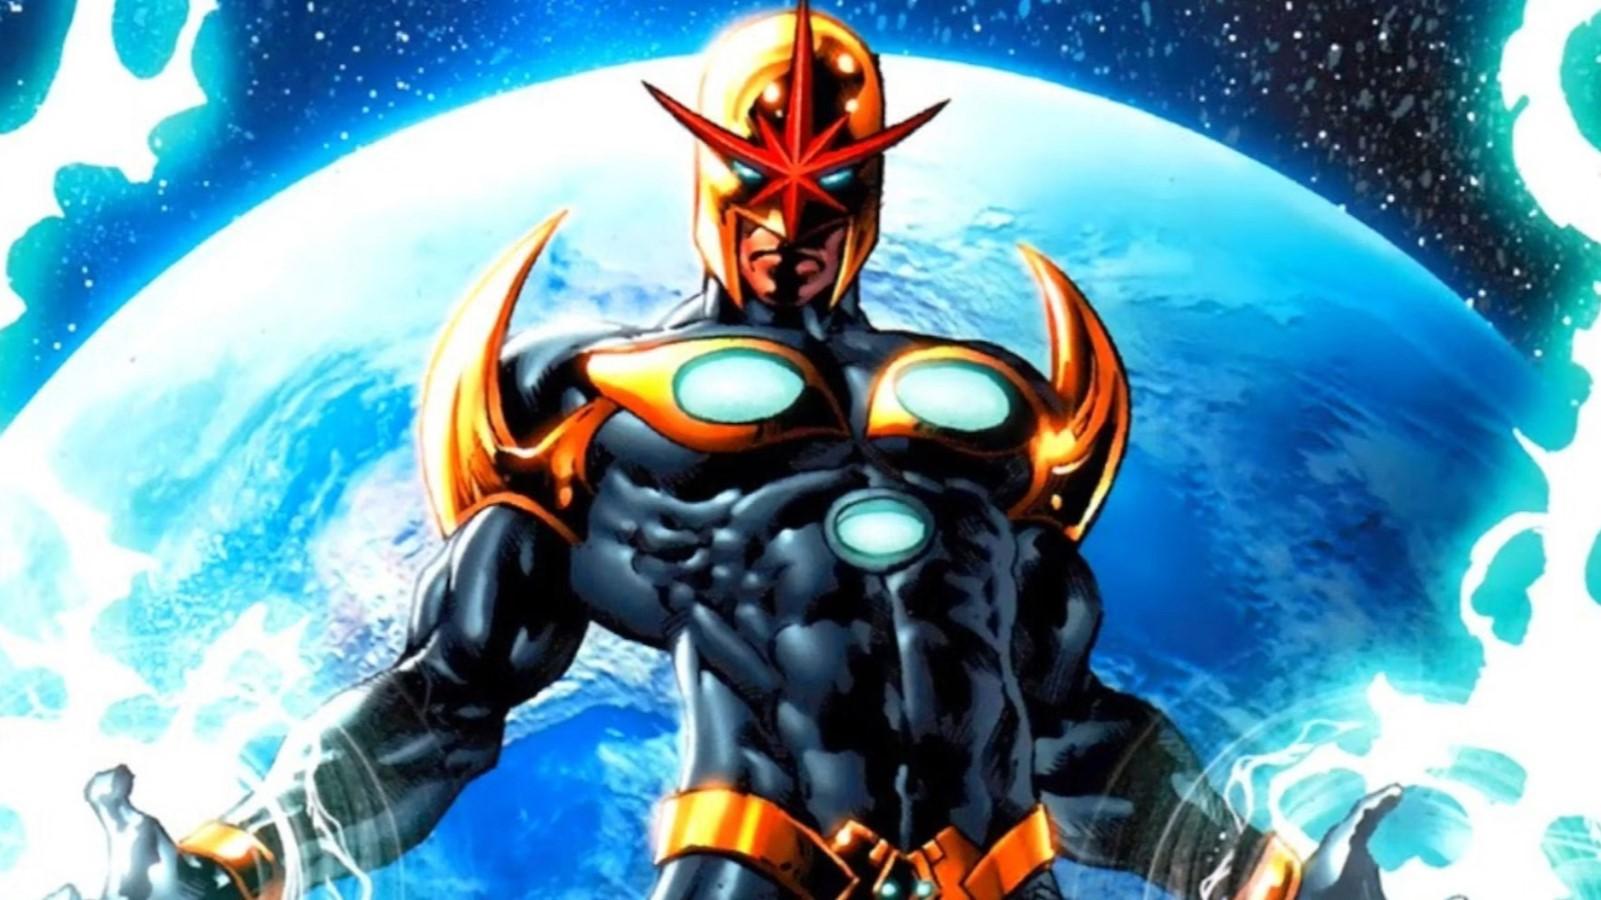 Marvel Comics featuring Nova